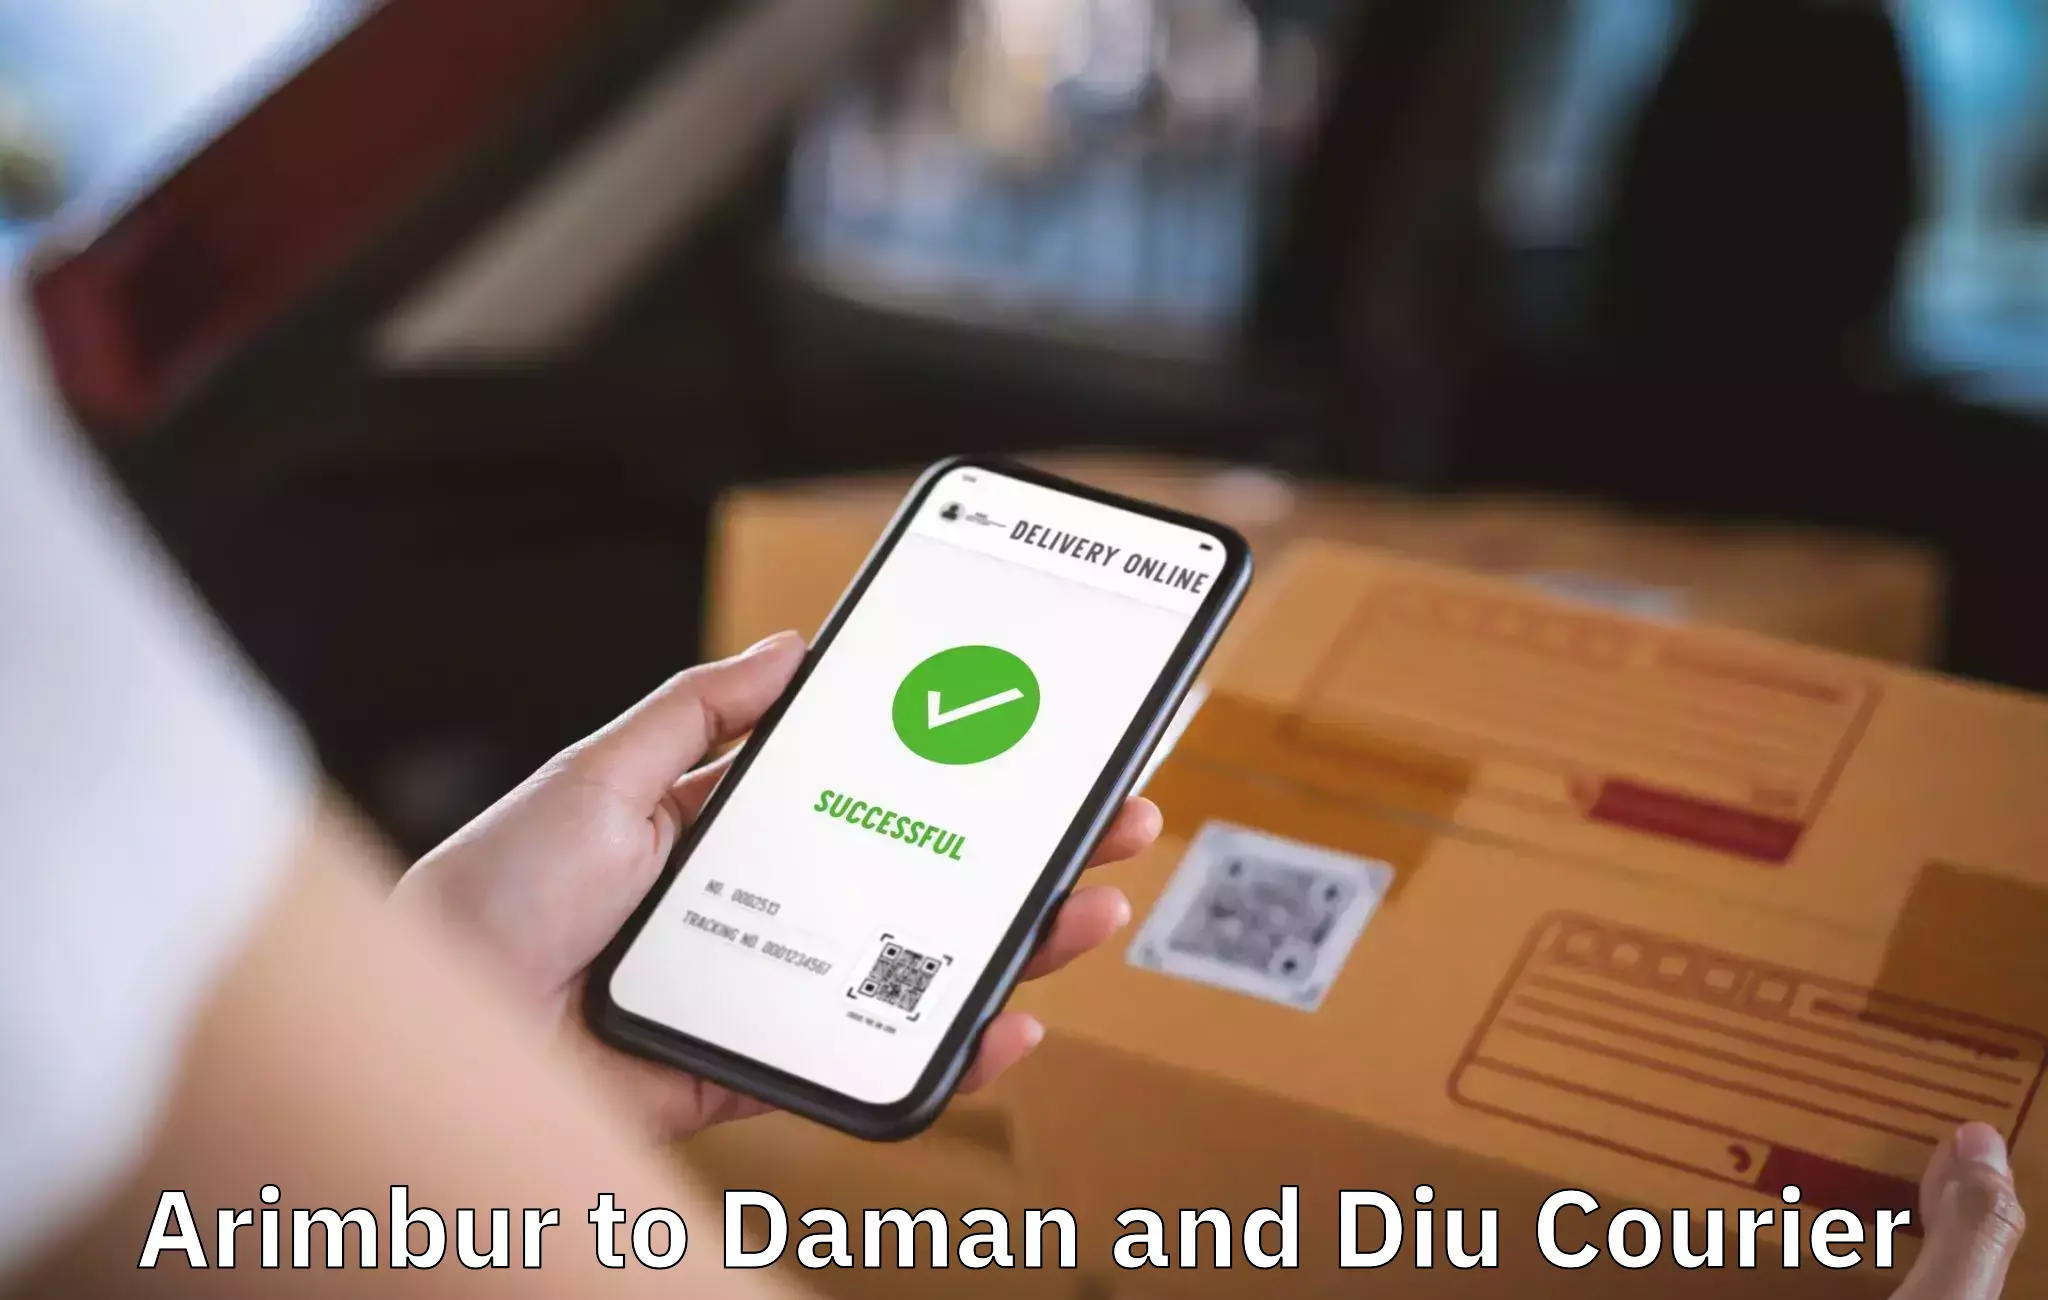 Furniture transport service Arimbur to Daman and Diu